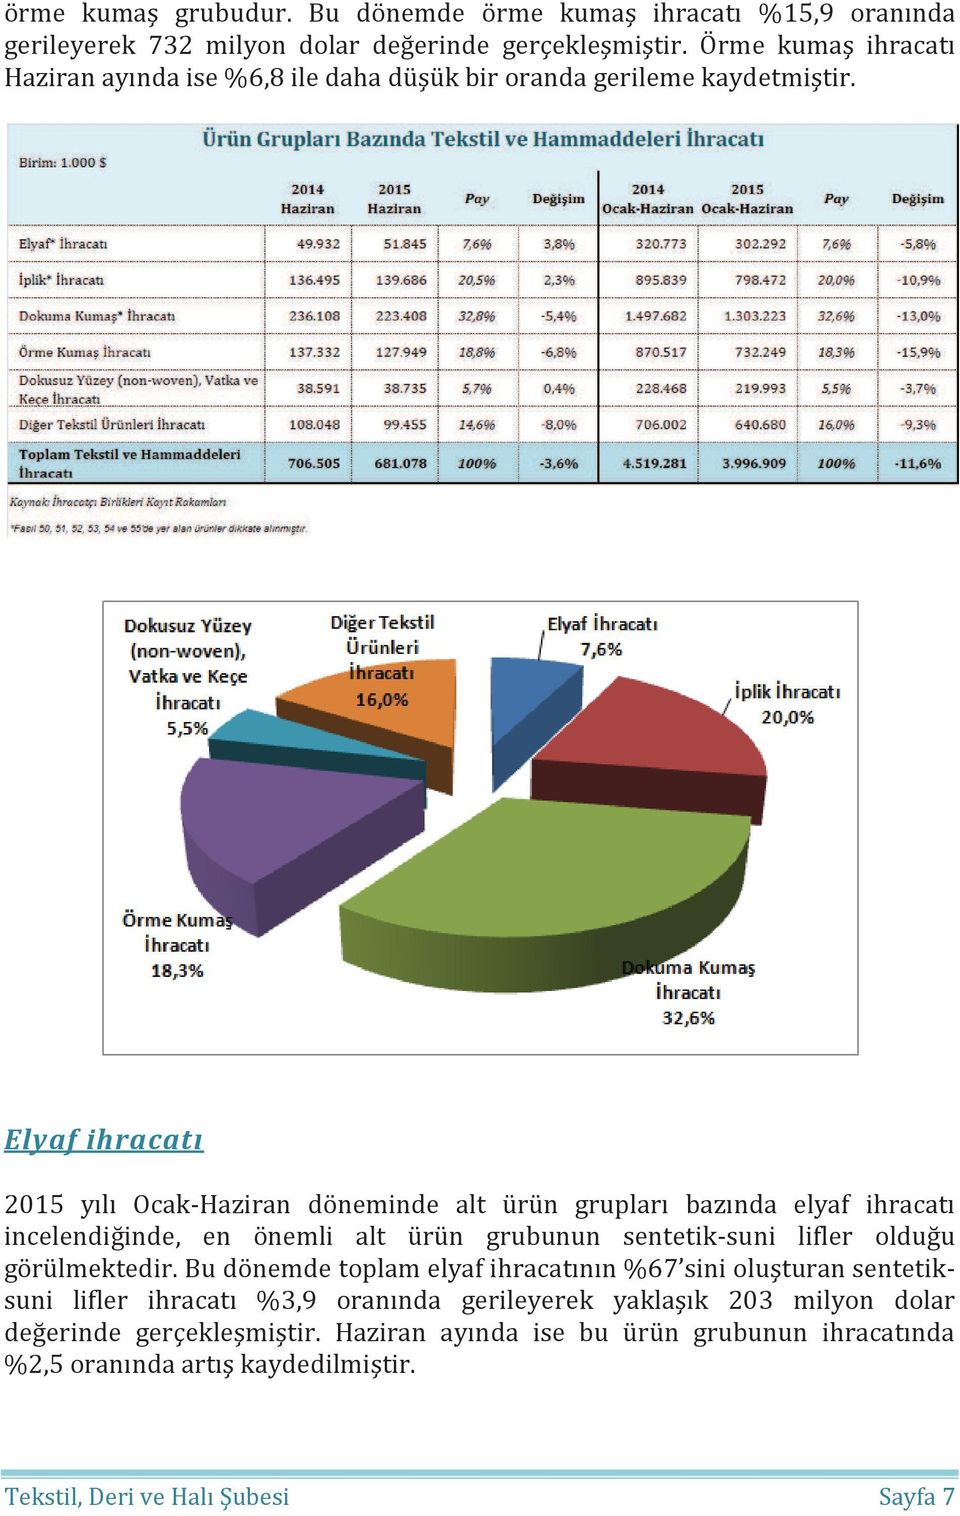 Elyaf ihracatı 2015 yılı Ocak-Haziran döneminde alt ürün grupları bazında elyaf ihracatı incelendiğinde, en önemli alt ürün grubunun sentetik-suni lifler olduğu